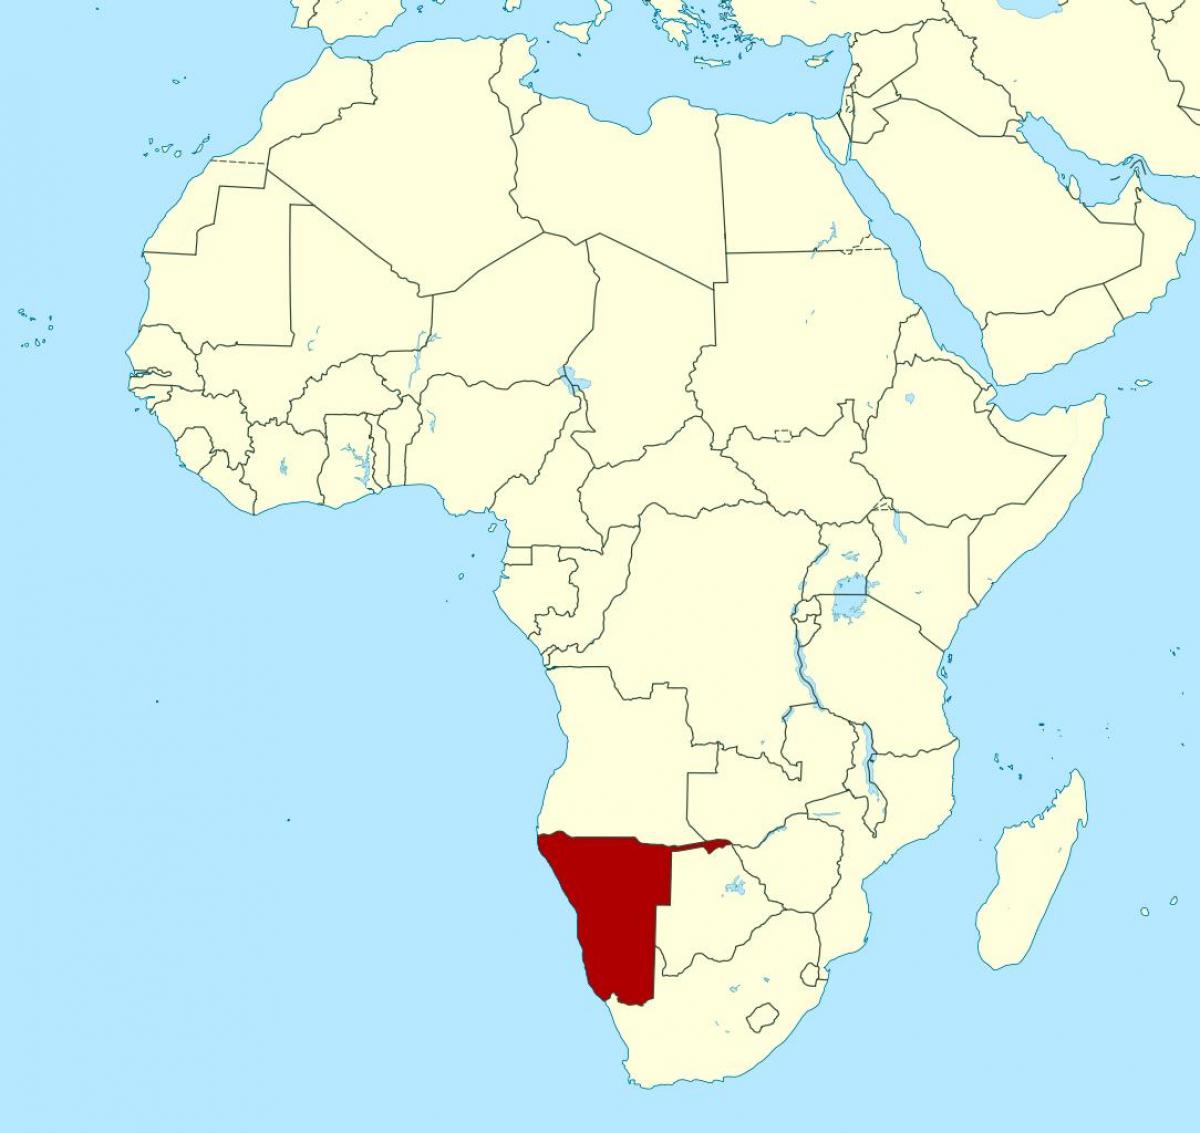 რუკა აფრიკაში, ნამიბიაში